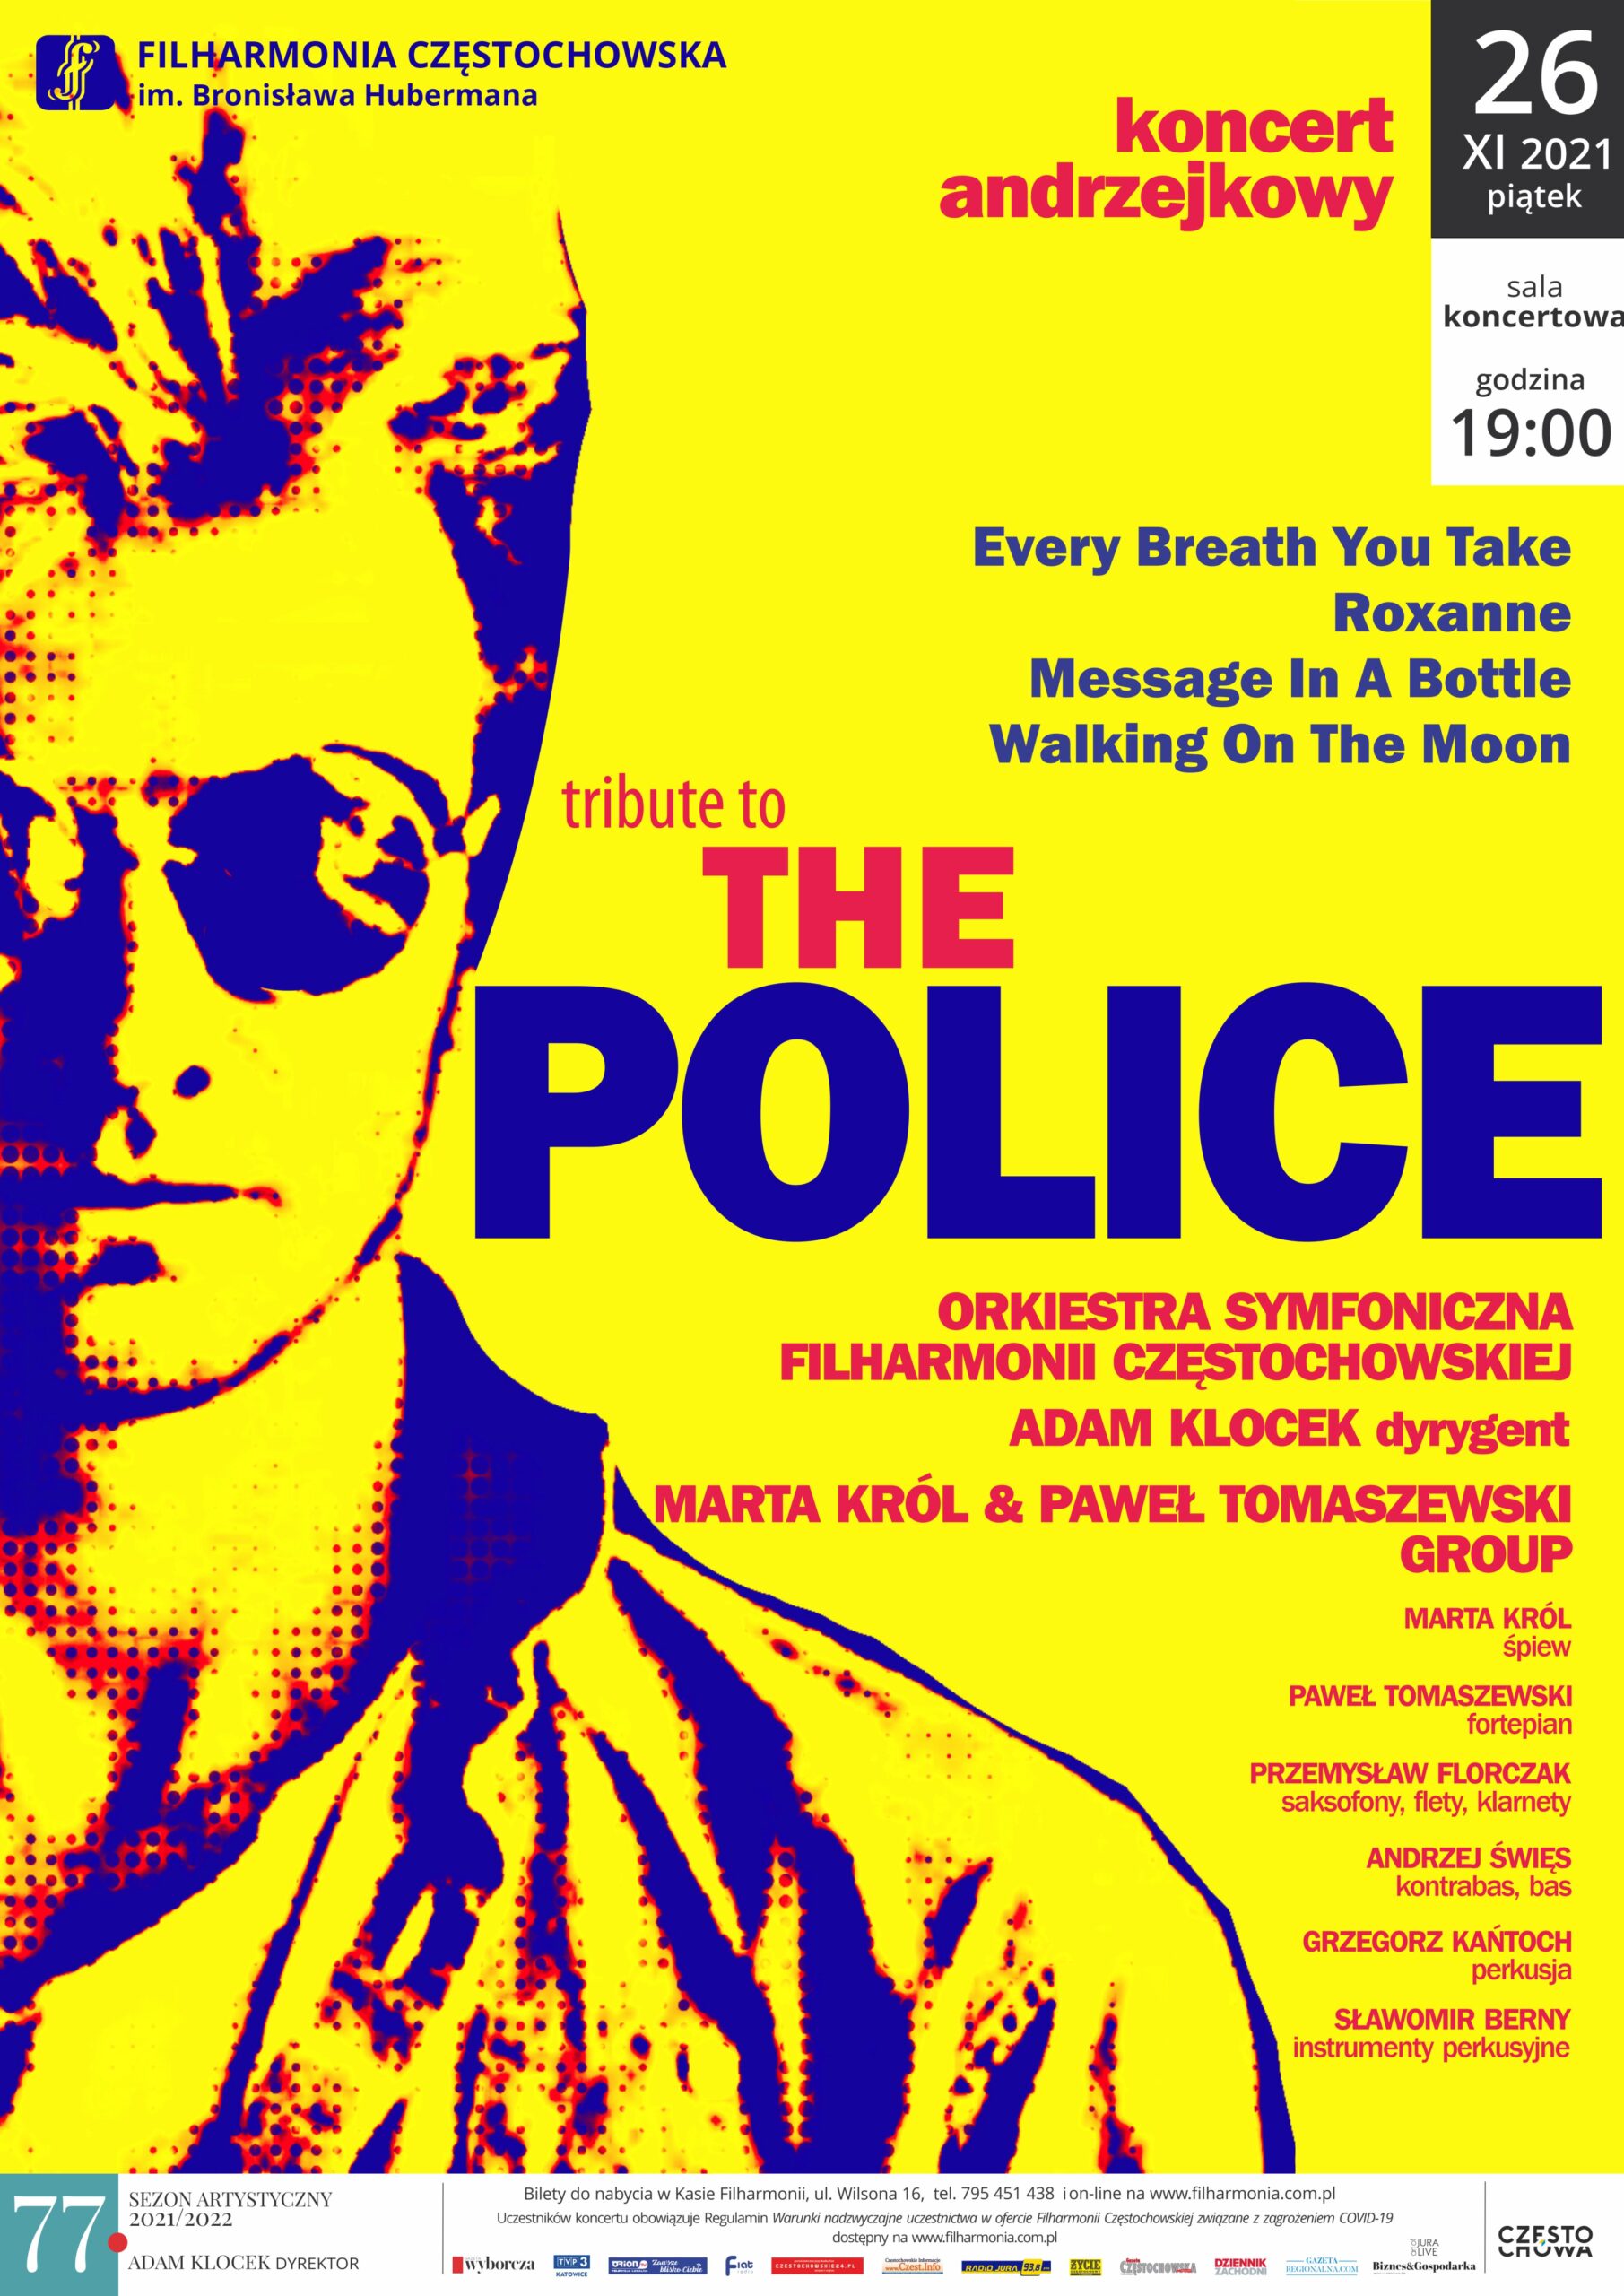 "Tribiute the Police”, czyli andrzejkowa propozycja Filharmonii Częstochowskiej. Będzie przebojowo! 2